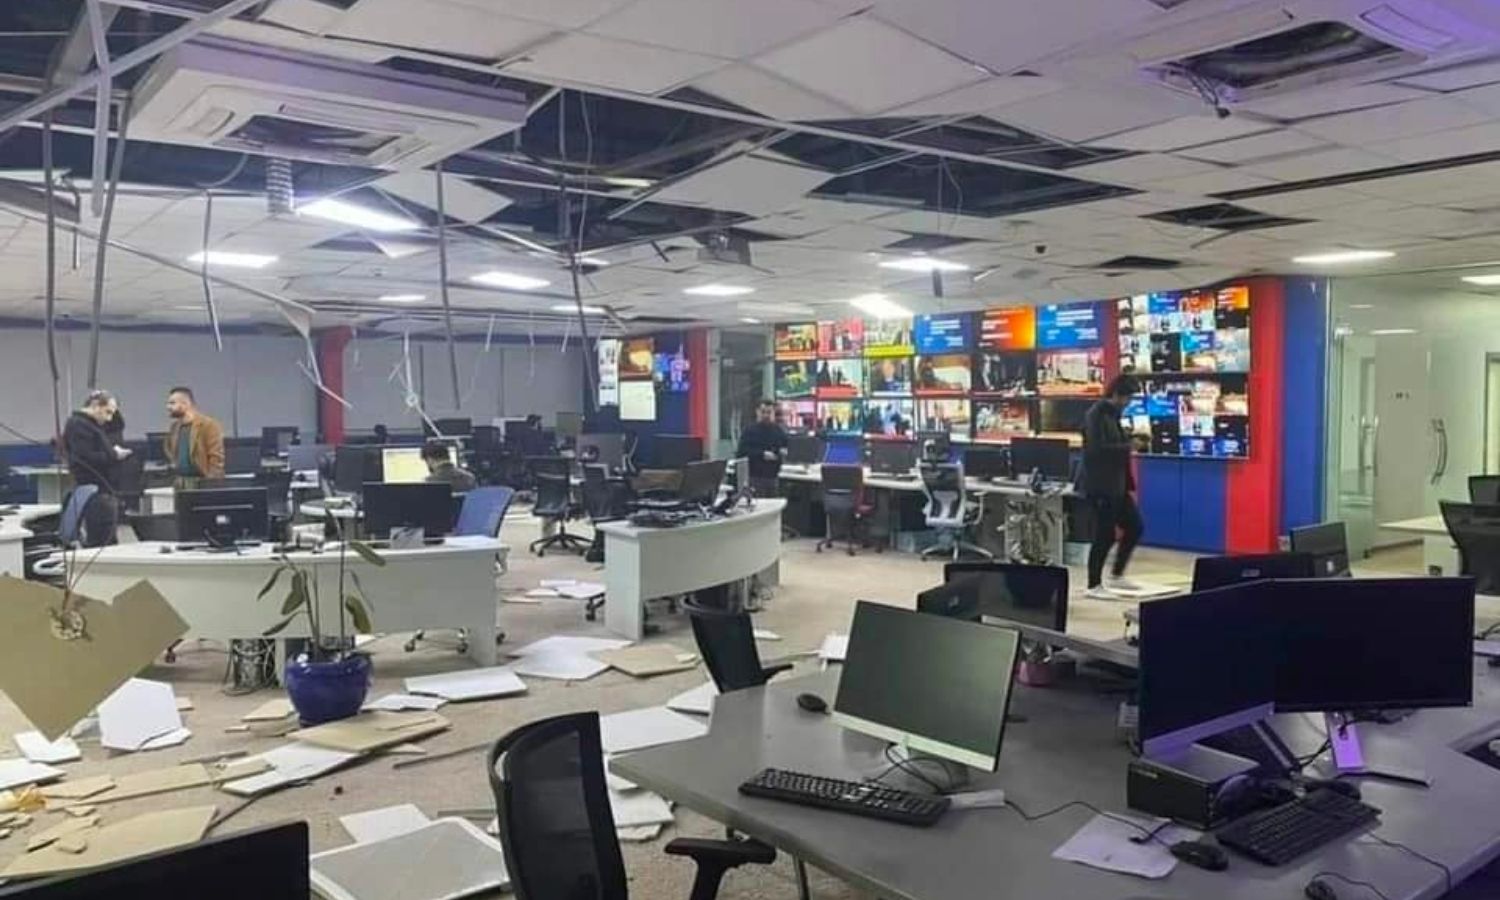 آثار القصف في مكاتب قناة "كردستان 24" في أربيل - 13 من آذار 2022 (حساب القناة في تويتر)